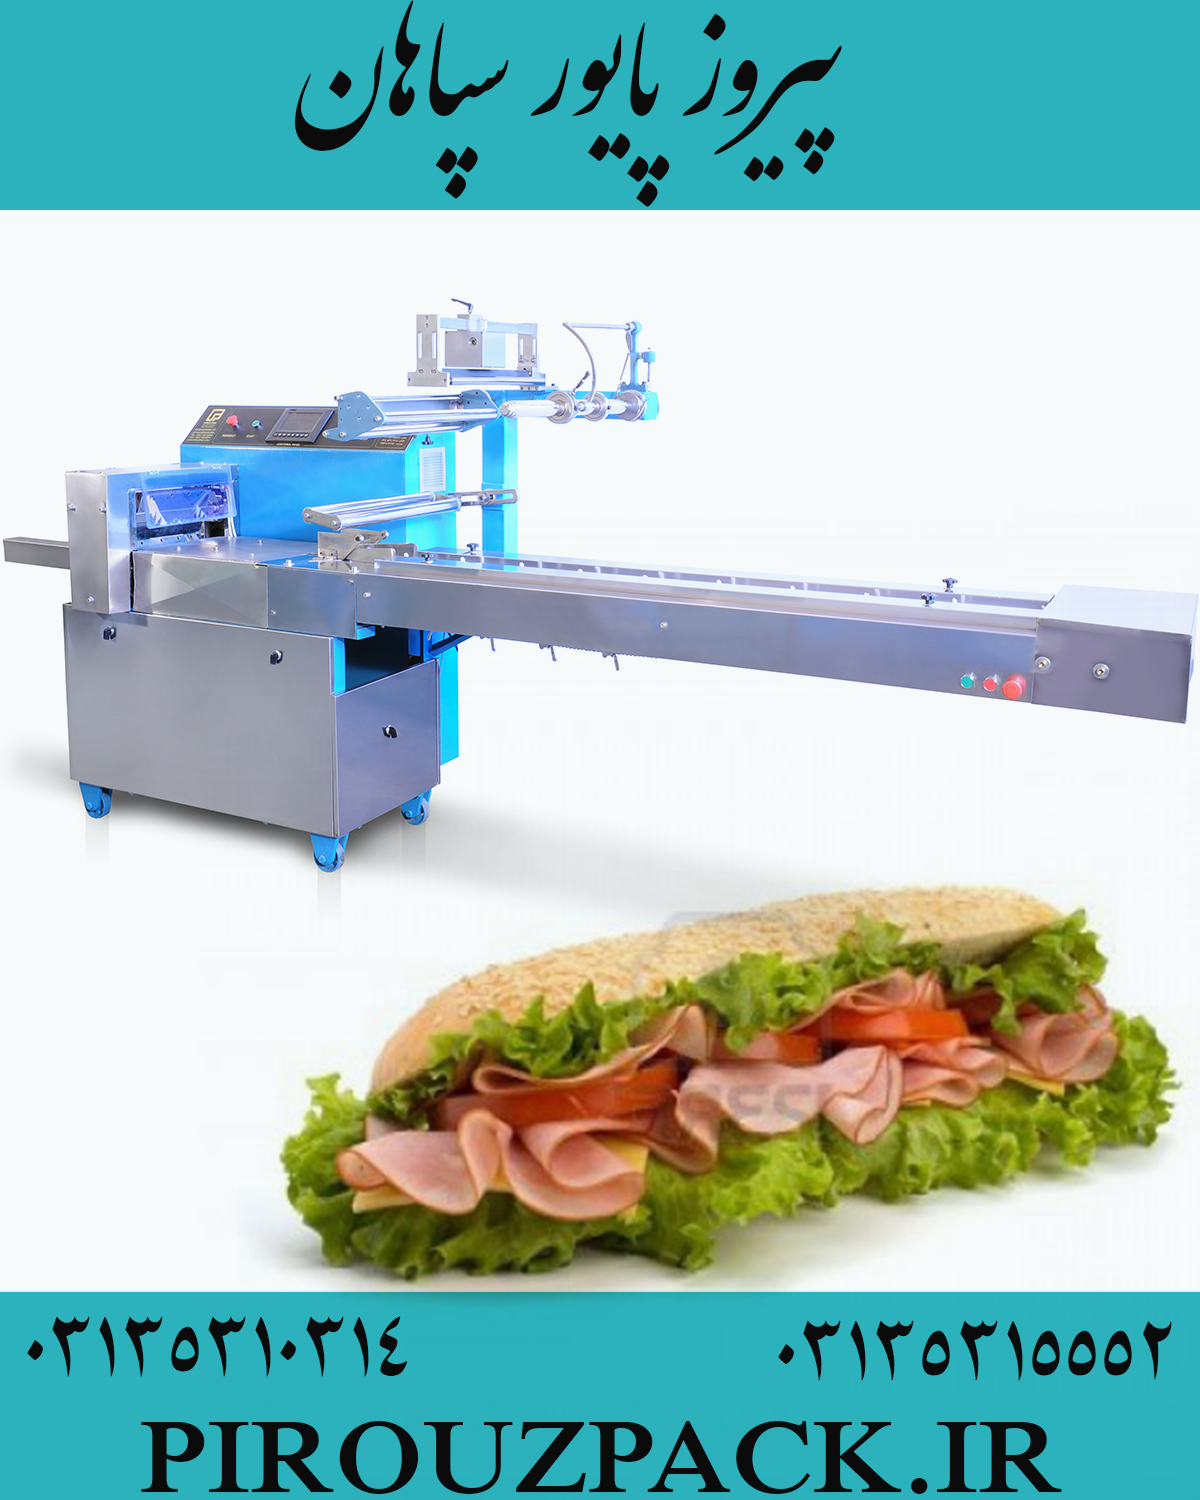 دستگاه بسته بندی ساندویچ در ماشین سازی پیروزپک